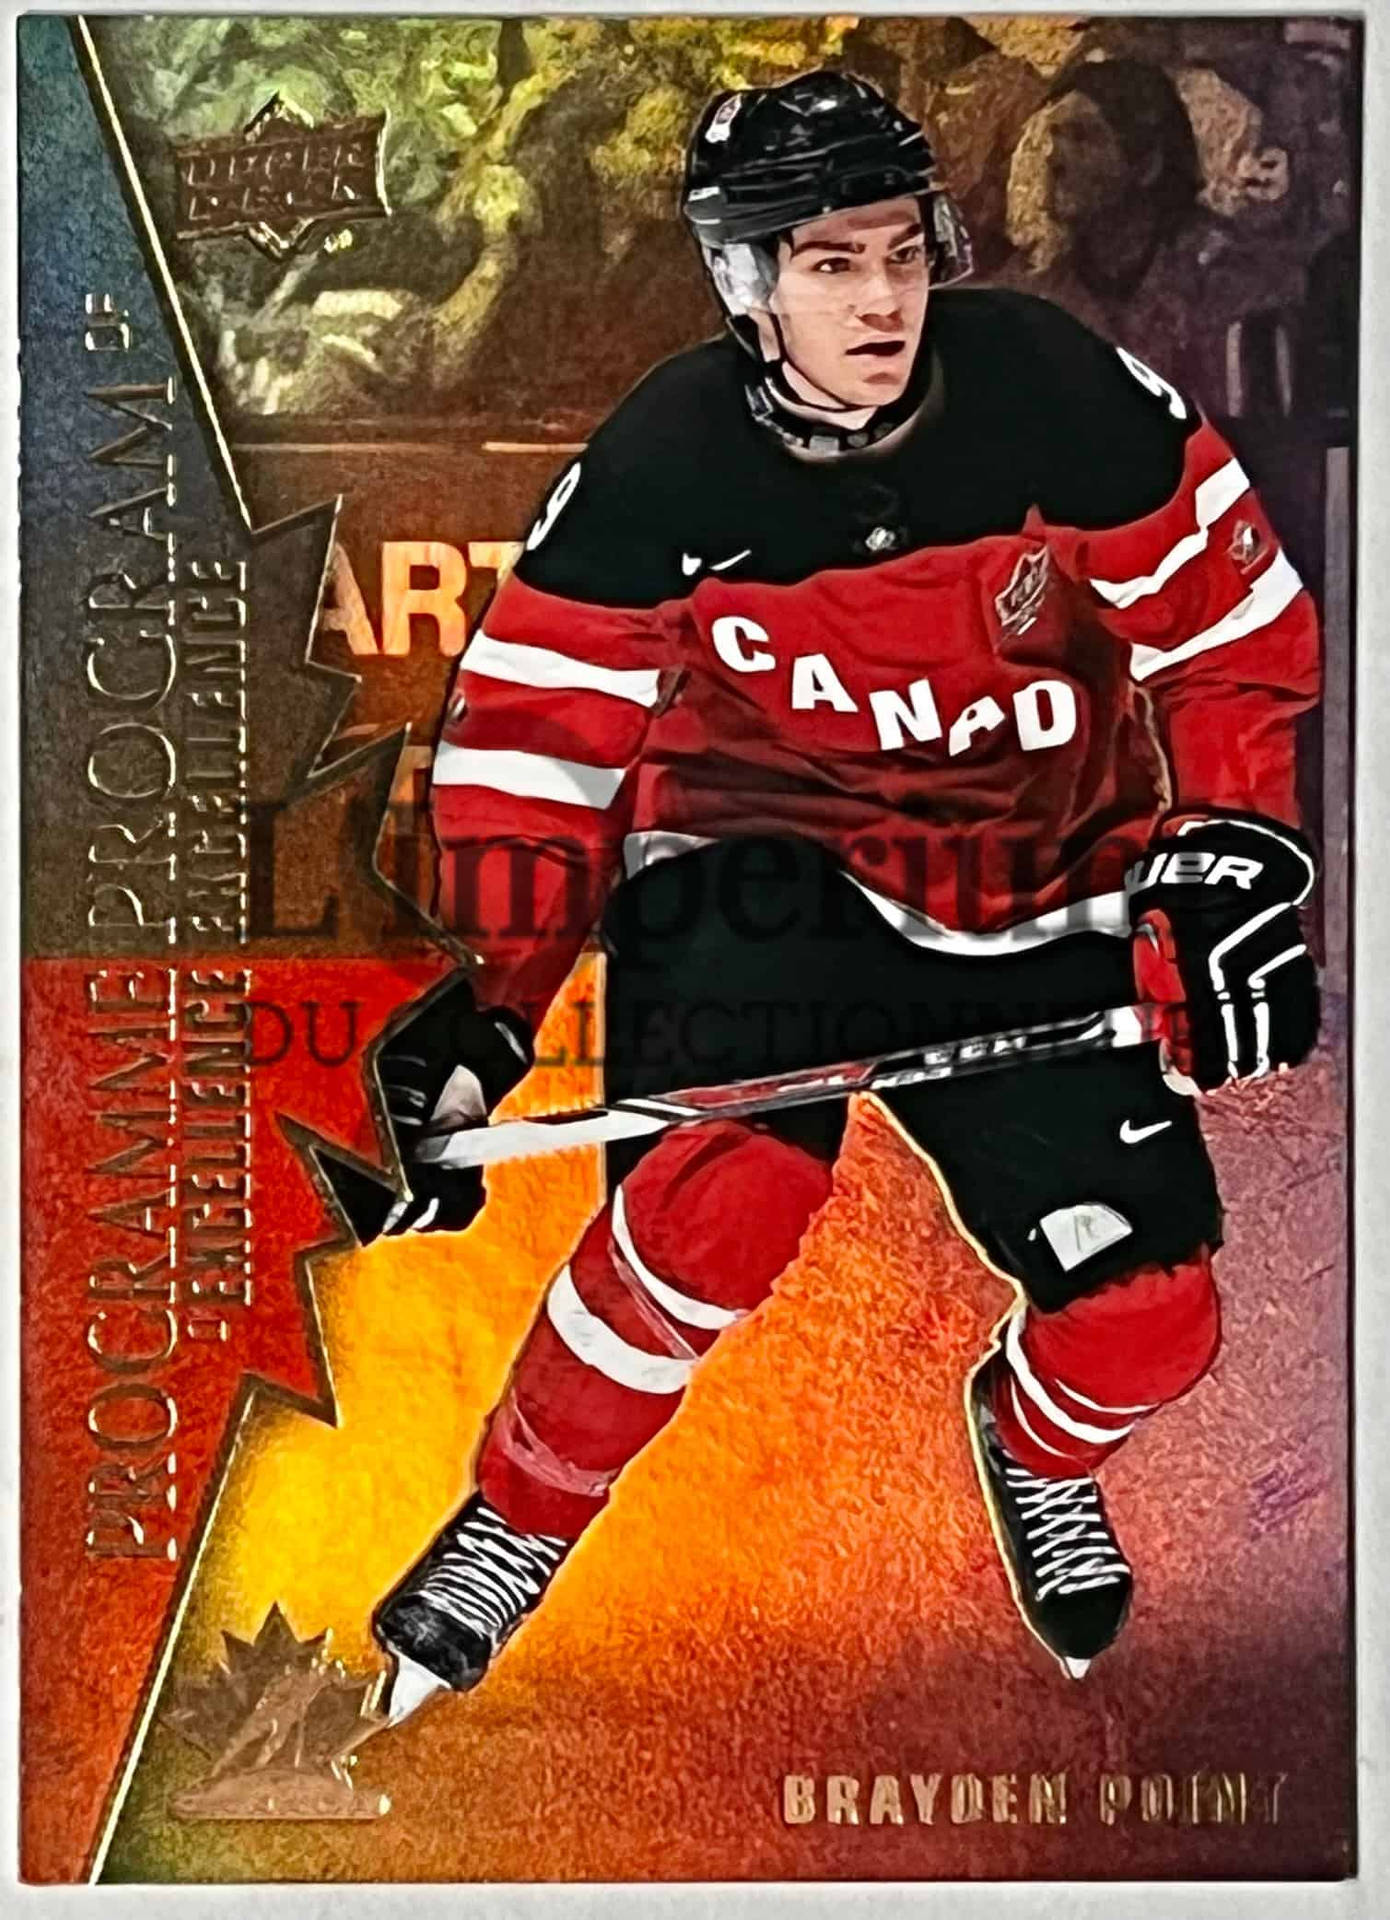 Brayden Point - Canadian National Men's Hockey Team Star Wallpaper